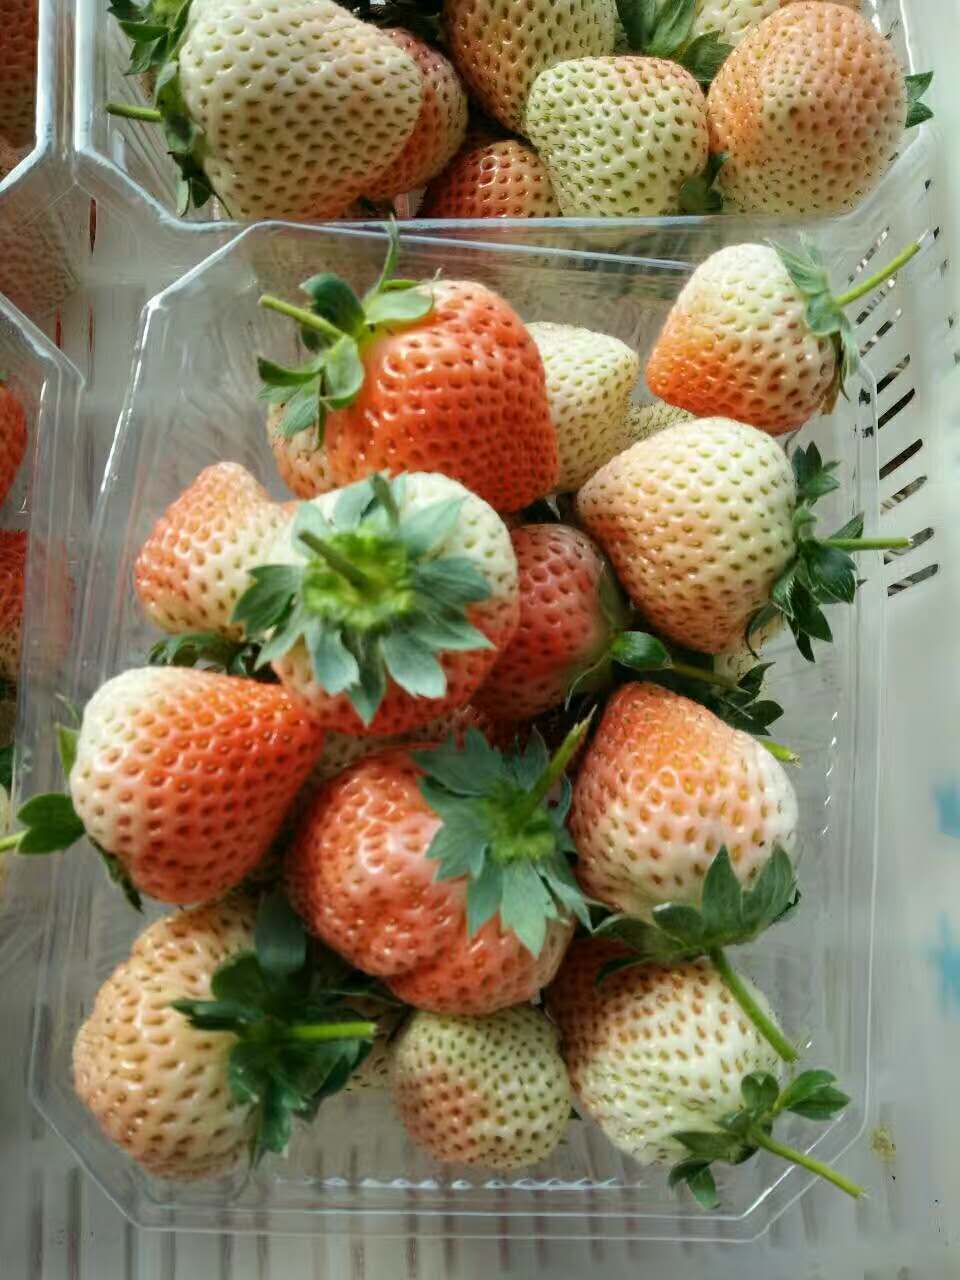 中国四季草莓苗游客锐减韩国旅游收支逆差再创新高